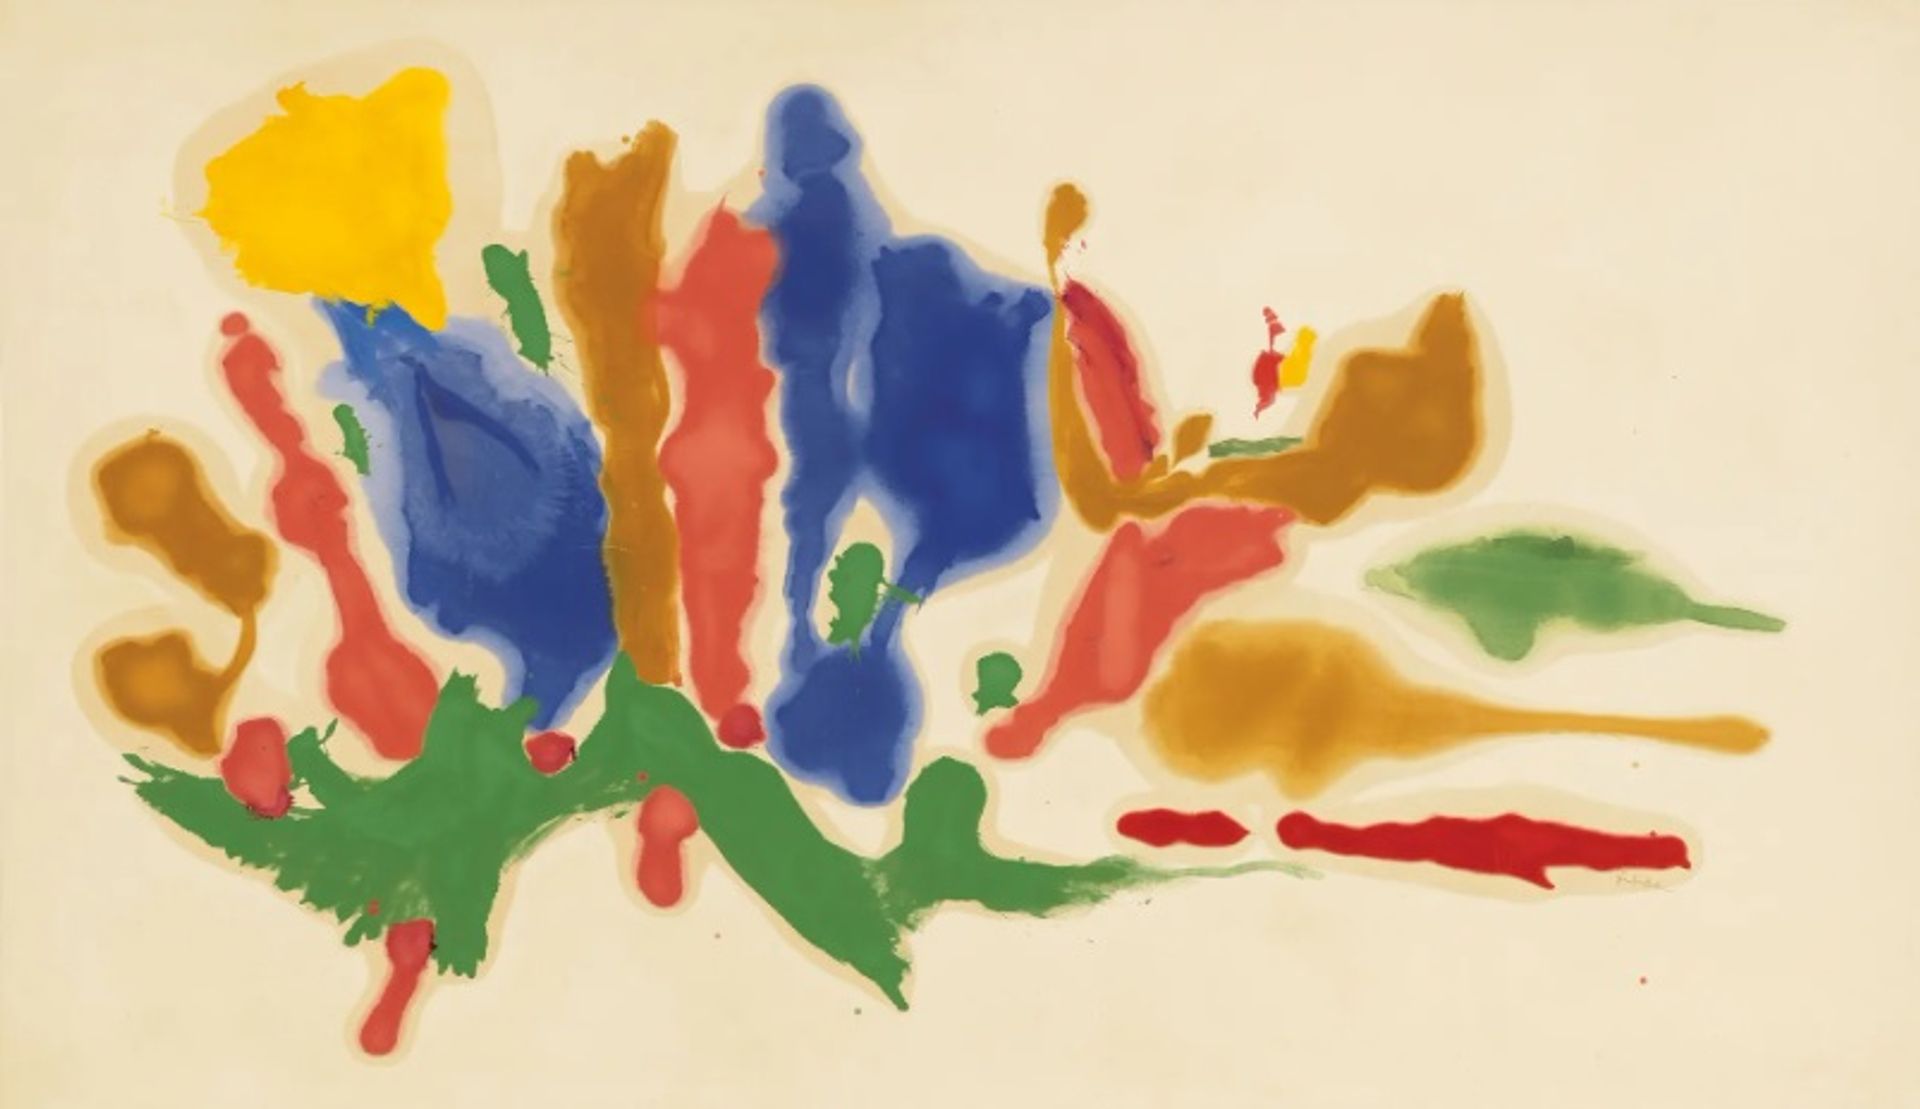 הלן פרנקנטלר, קיץ קריר, 1962

©2019 Helen Frankenthaler Foundation, Inc. אגודת זכויות האמנים (ARS), ניו יורק. צילום: רוב מקיבר, באדיבות גאגוסיאן